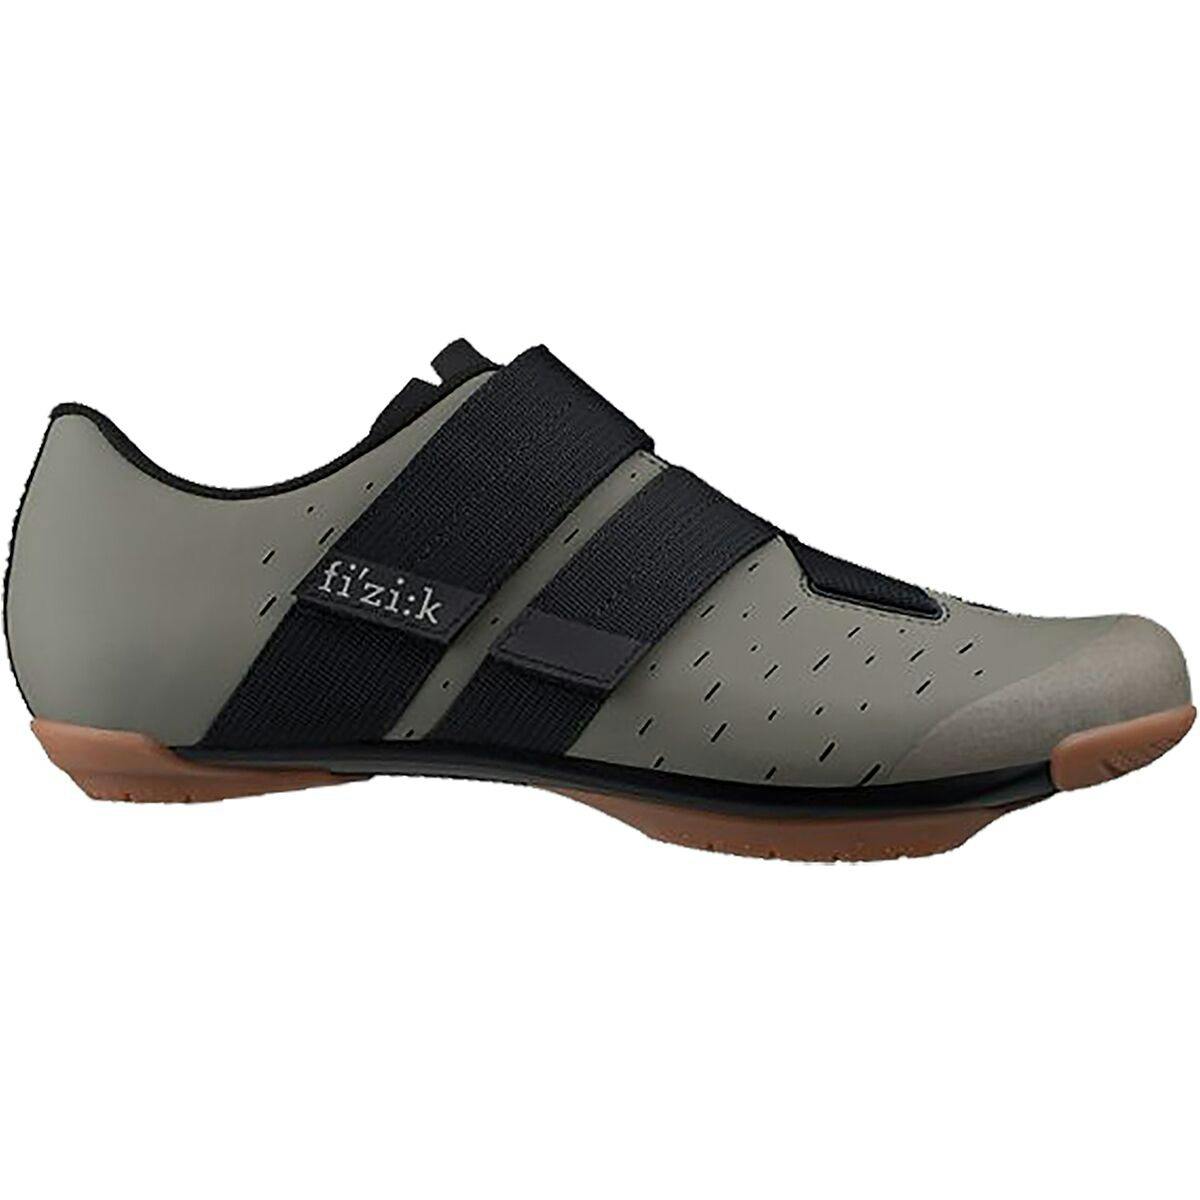 Fizik Terra Powerstrap X4 Cycling Shoes - Mud/Caramel - 37